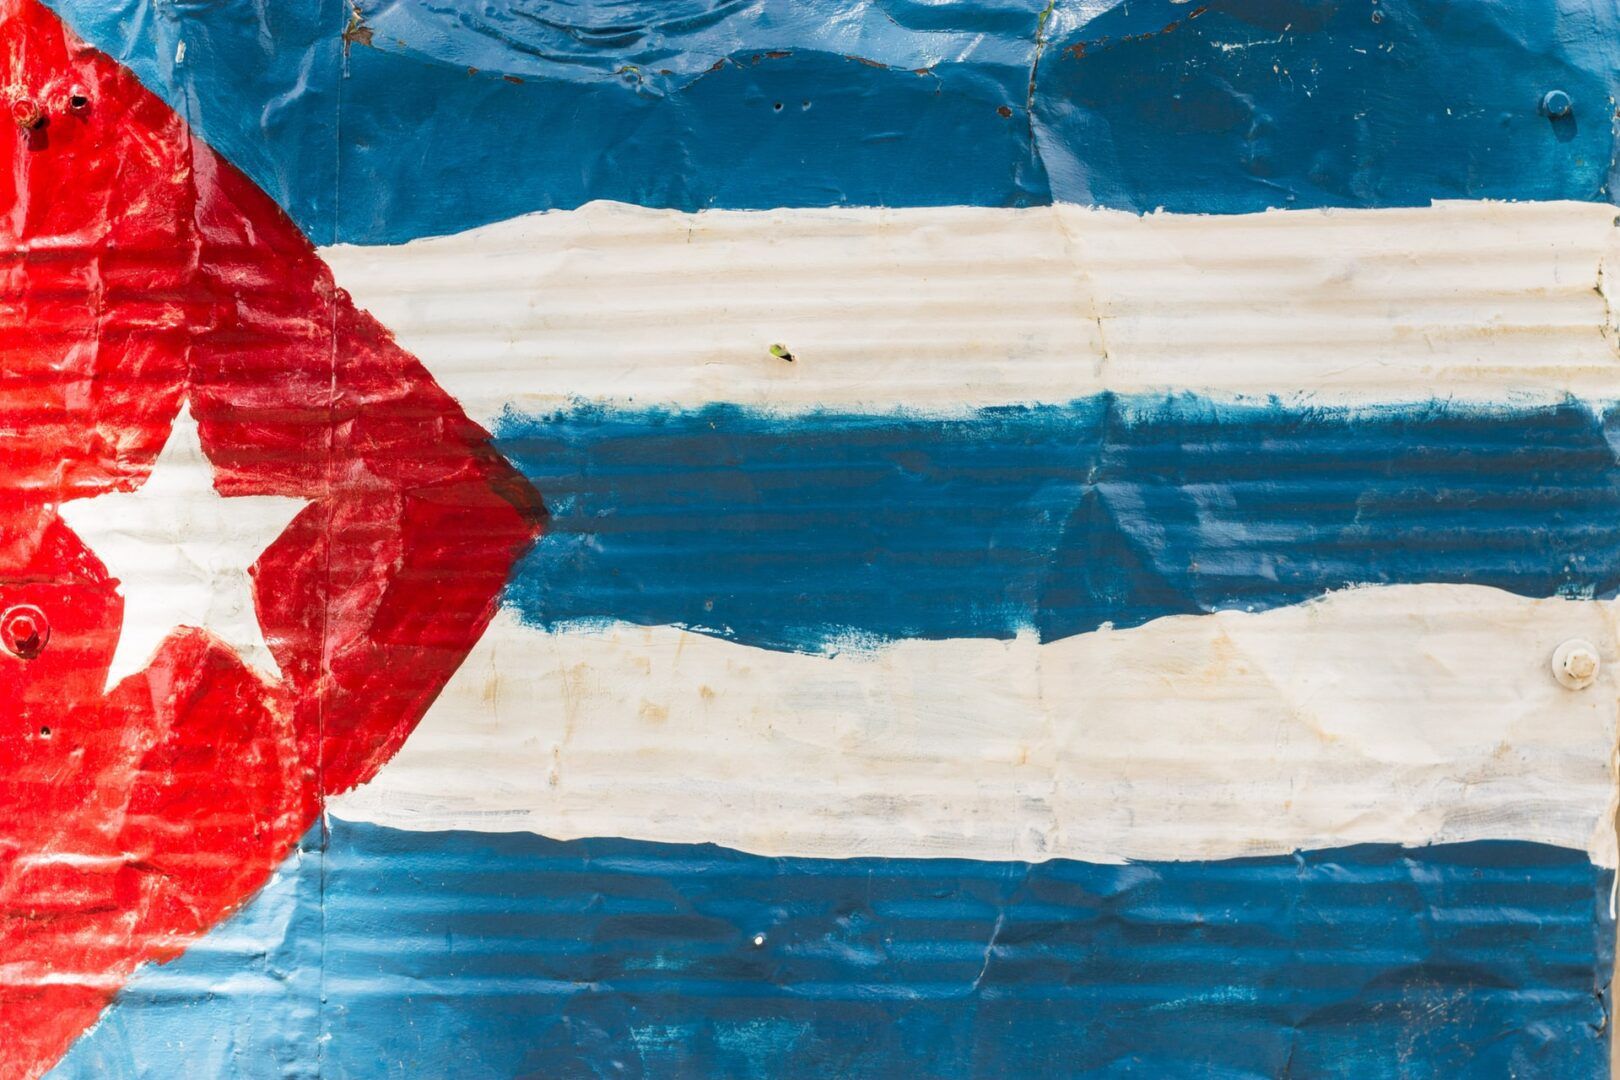 Kuba Reise: Was es hier zu sehen gibt